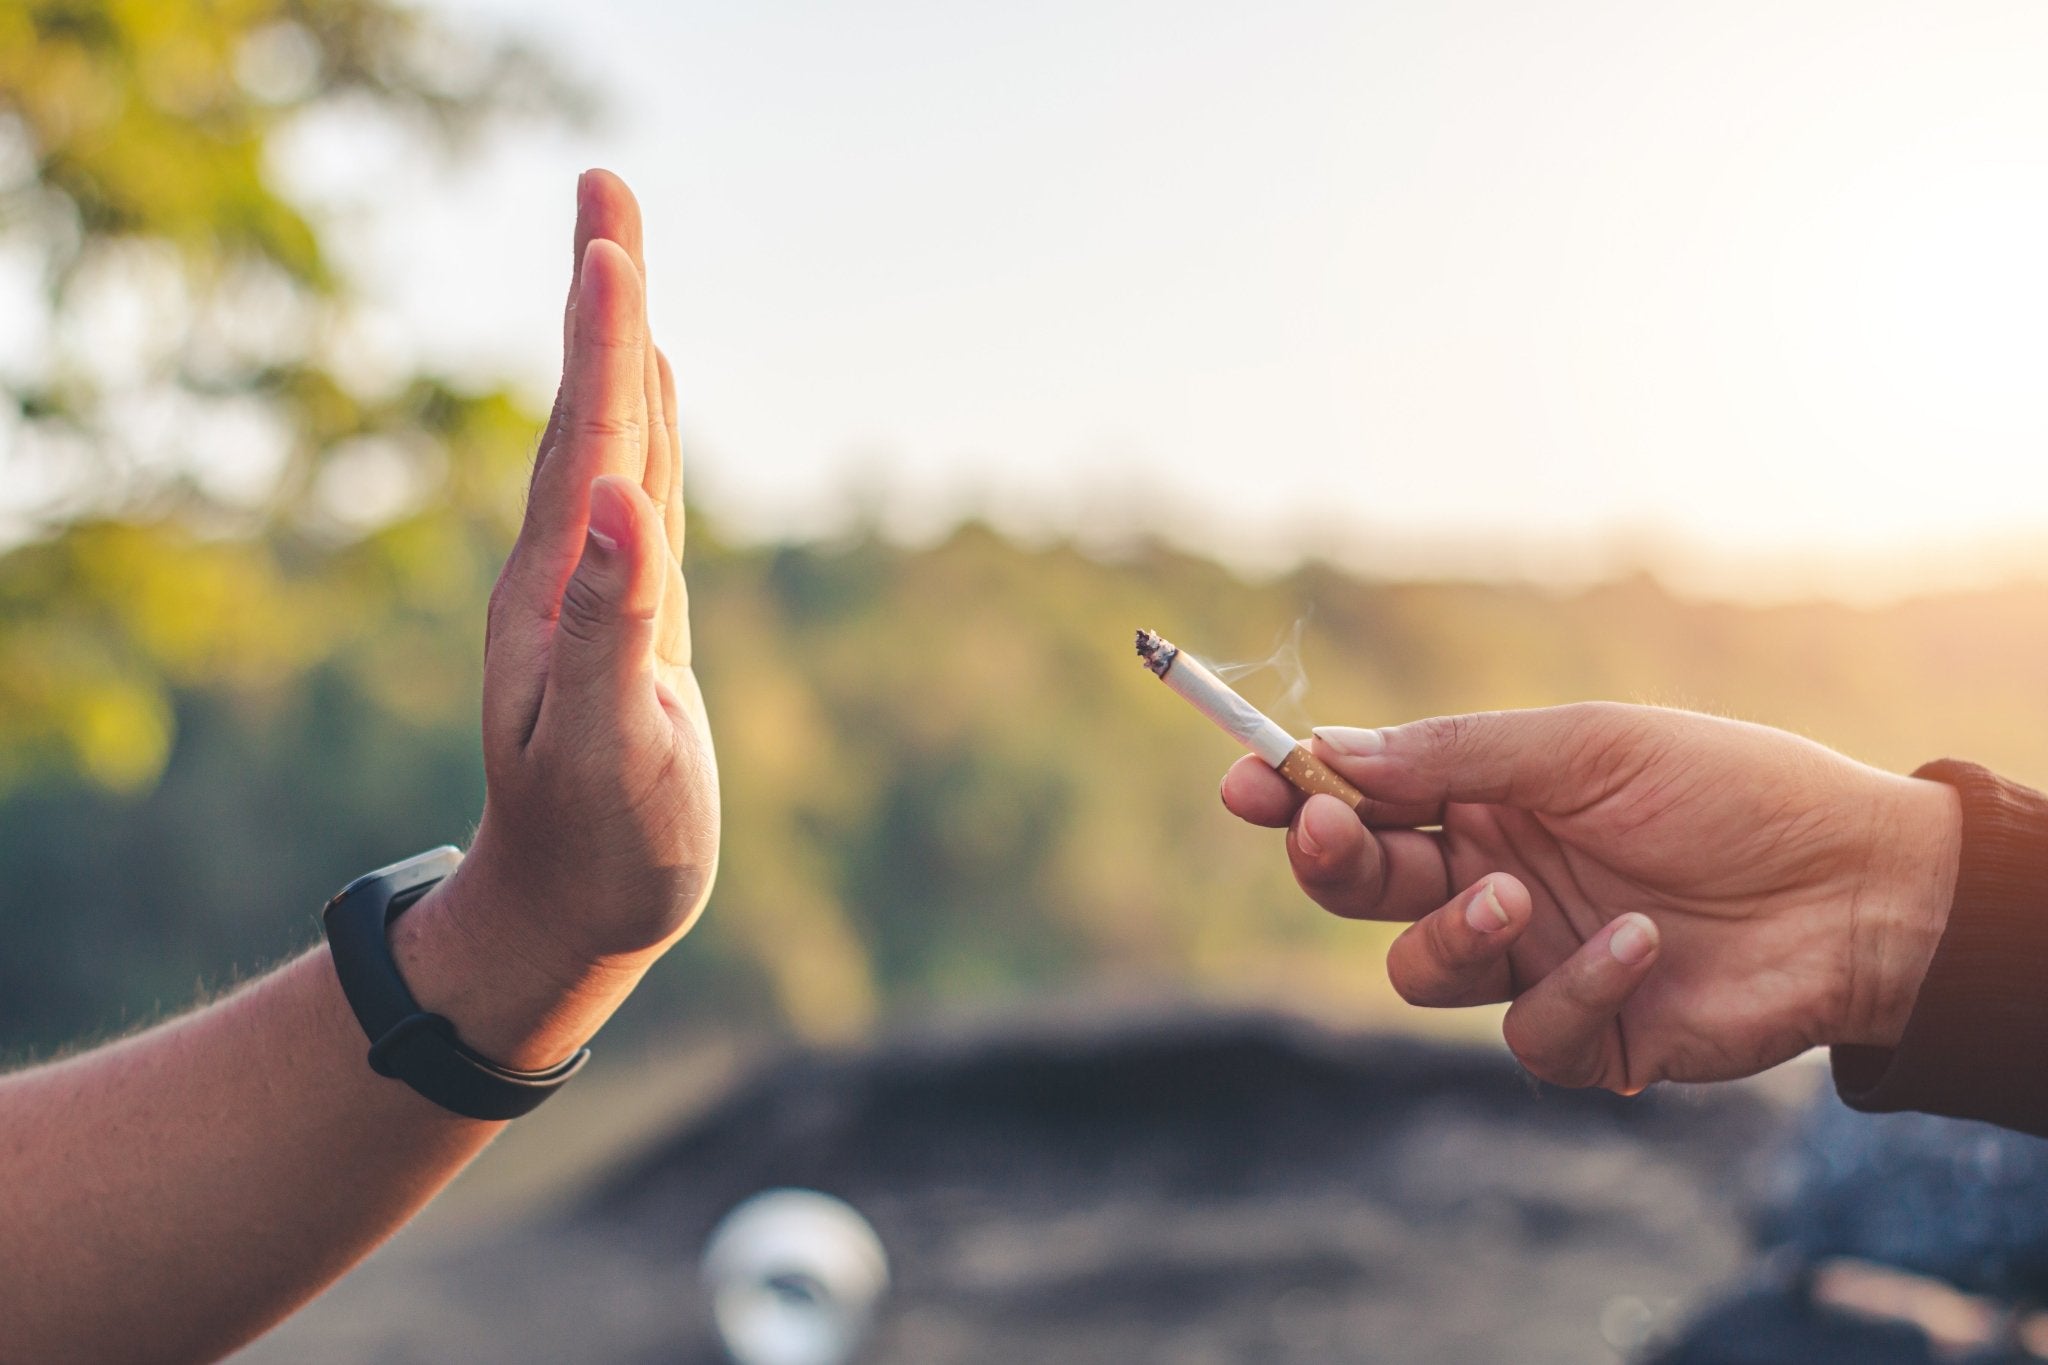 Vape Guide: Kan vaping med e-sigaretter hjelpe med røykeslutt? - SmokeLab